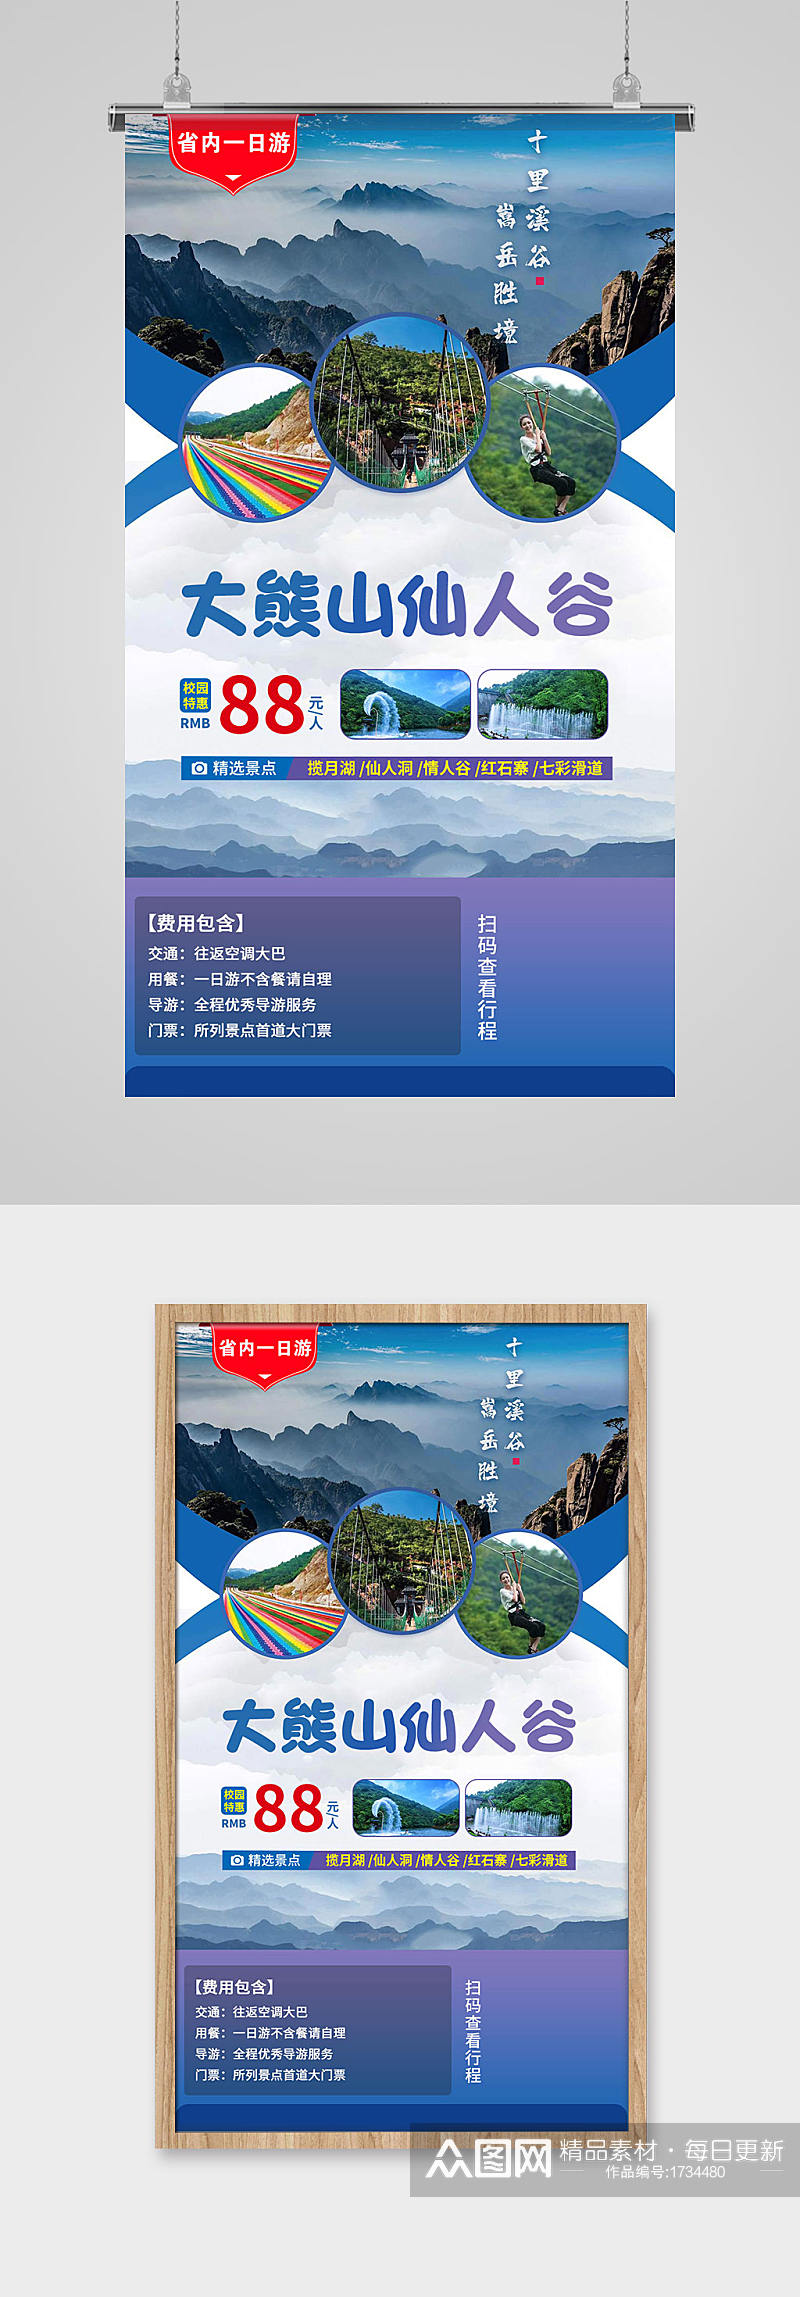 大熊山仙人谷旅游宣传海报素材